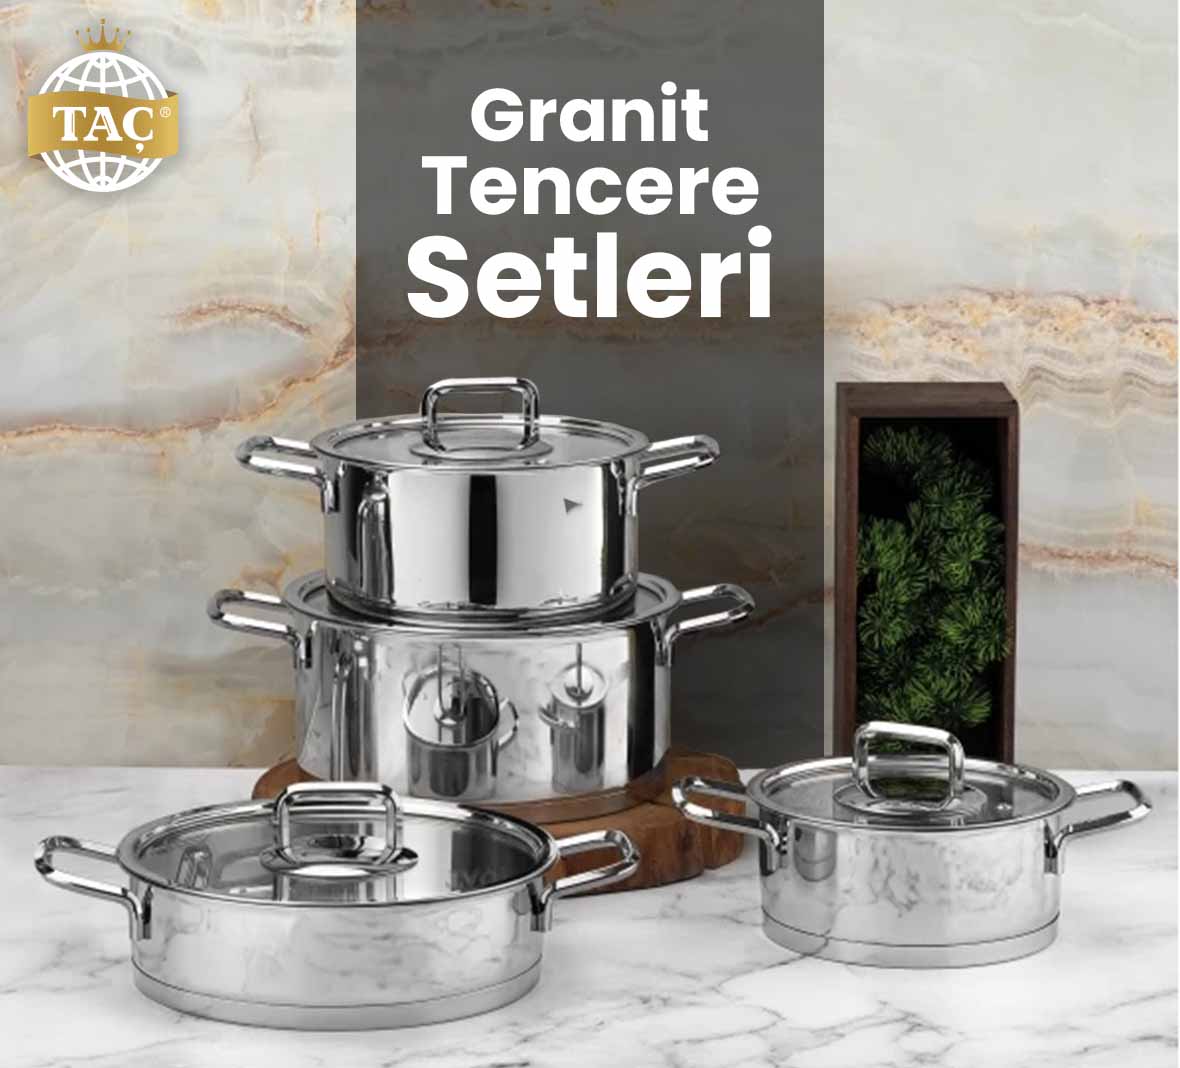 Granit Tencere Setleri - Pişirme Ürünleri - Paslanmaz - Yağlanmaz Tencere - Taç